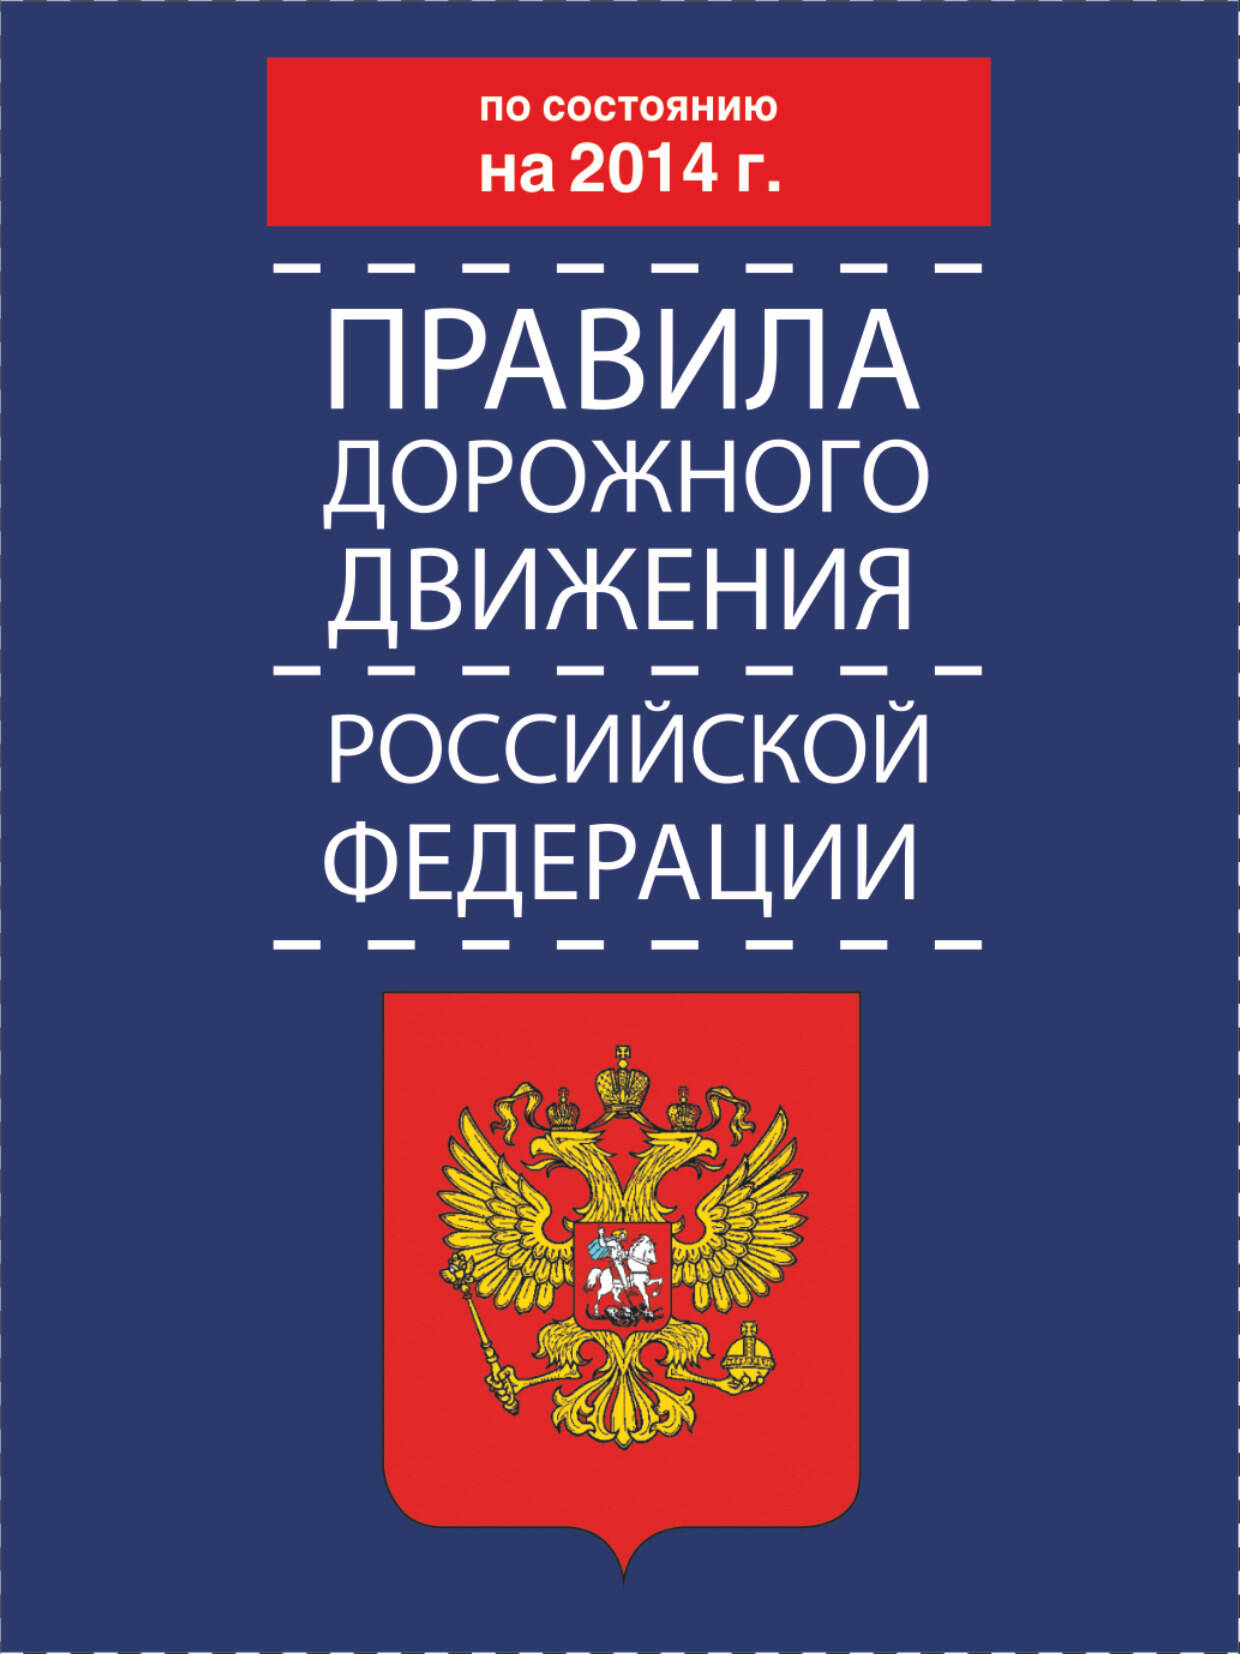  Правила дорожного движения Российской Федерации по состоянию на 2014 г. - страница 0